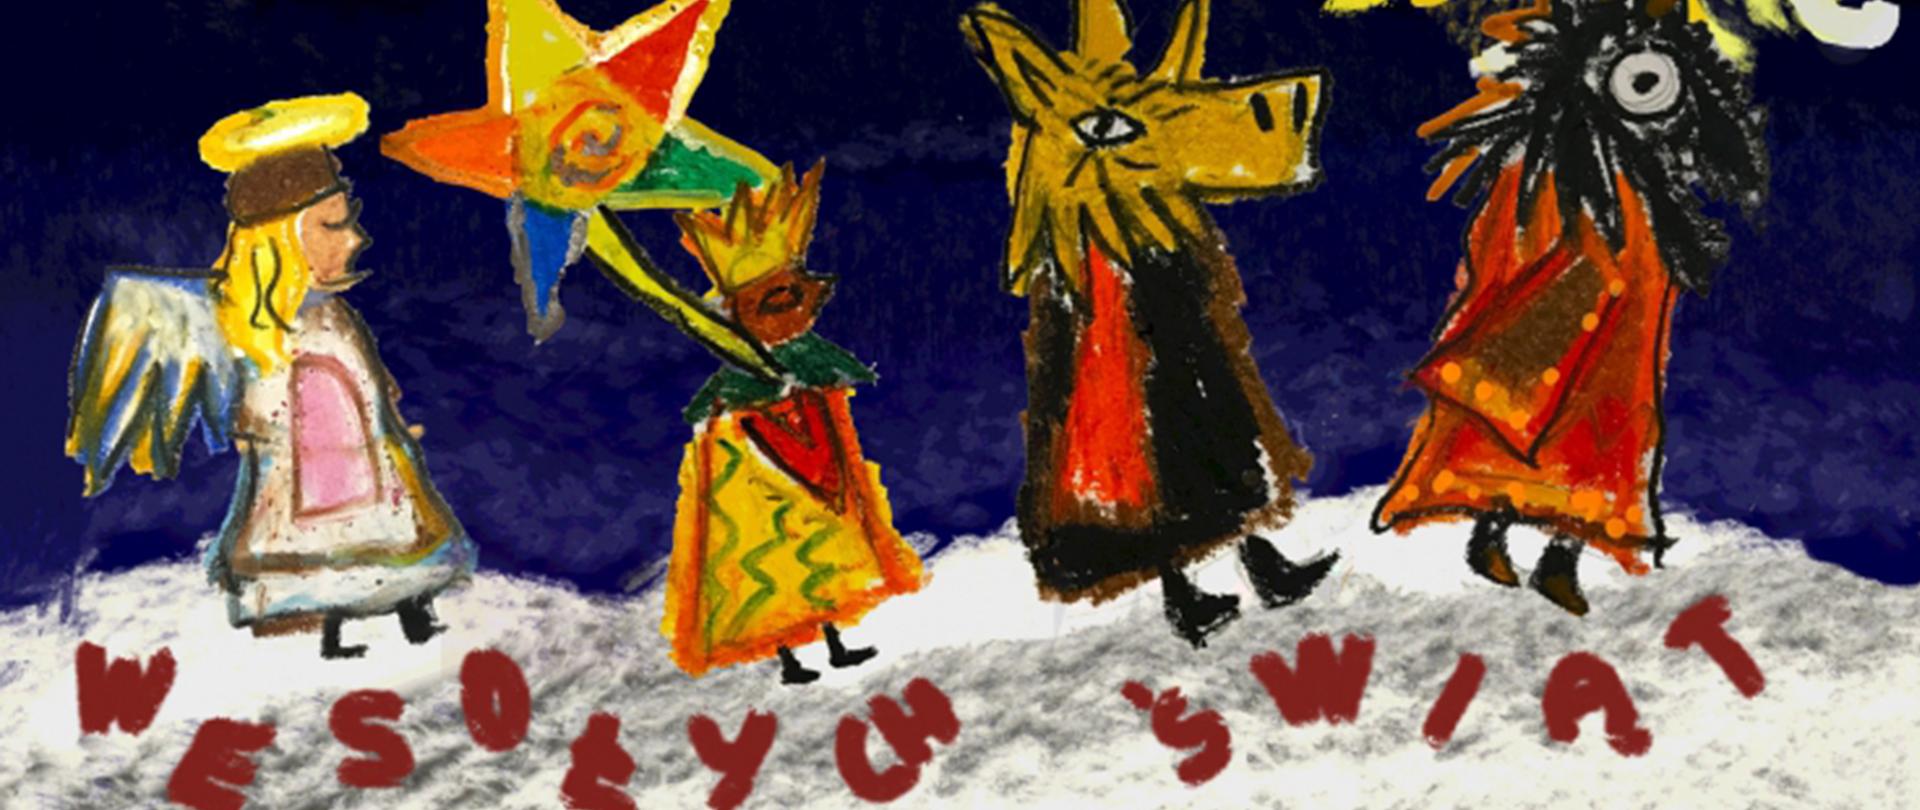 Kolorowy rysunek, przedstawiający kolędników: Anioła, Króla z gwiazdą, Turonia nad którymi jest żółta Kometa, na dole napis Wesołych Świąt